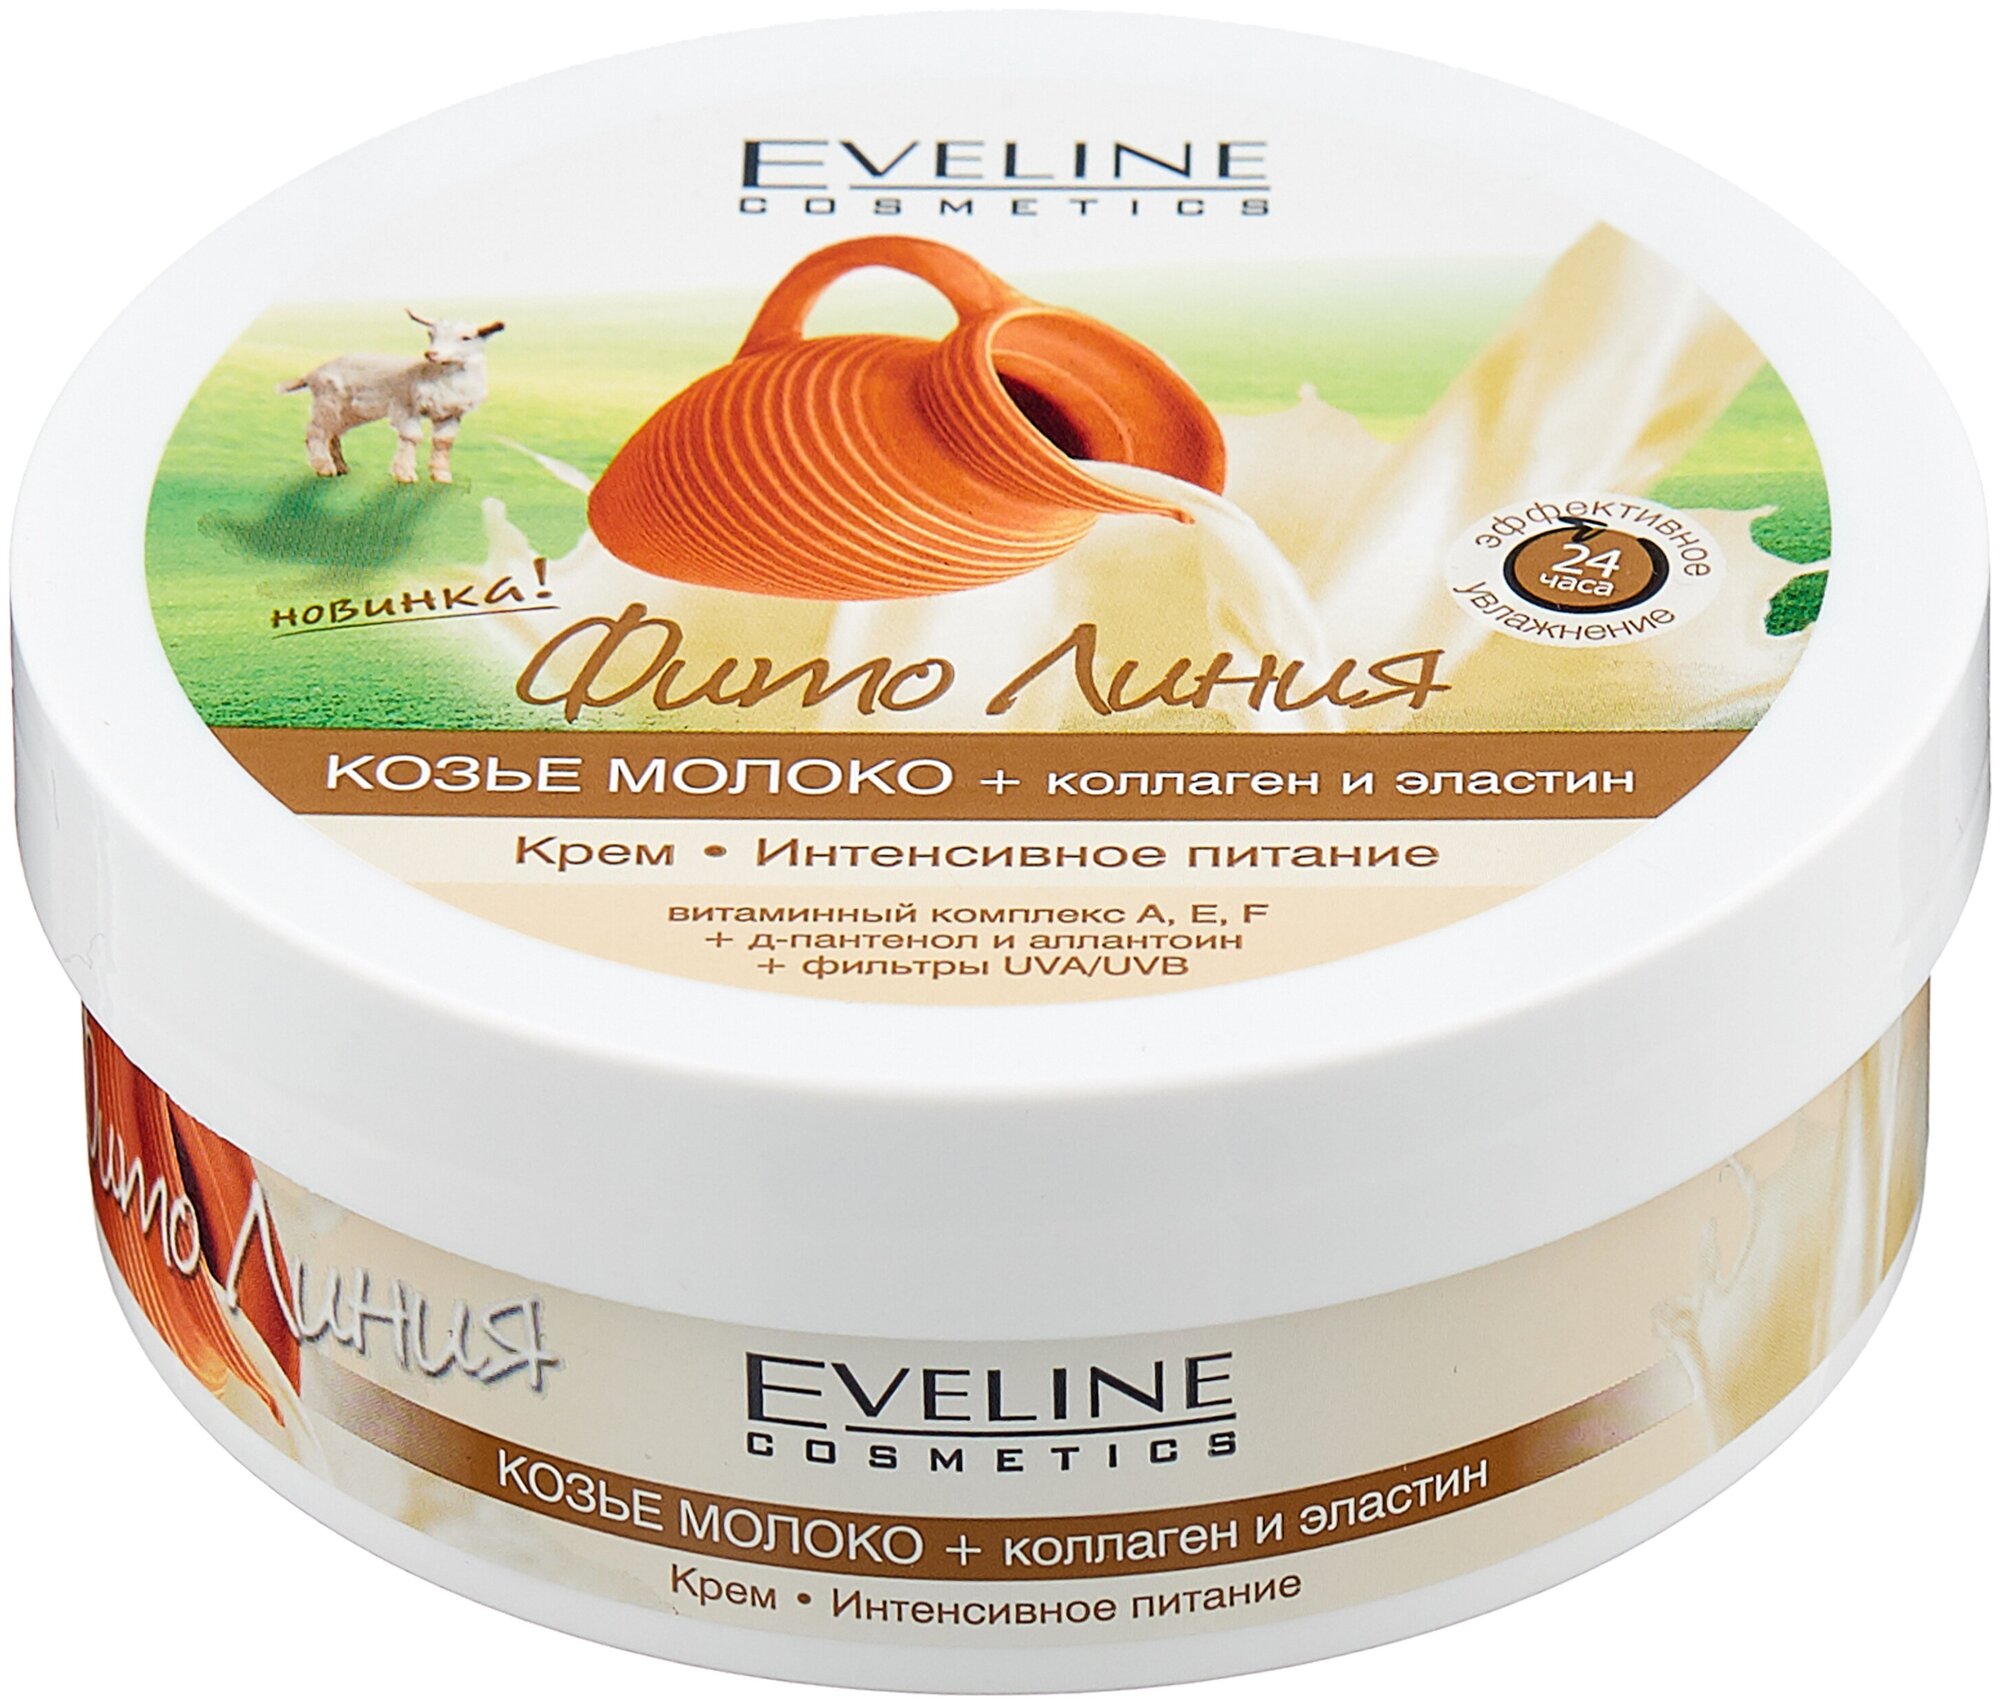 Eveline Cosmetics Крем для тела Фито Линия Козье молоко + коллаген и эластин Интенсивное питание